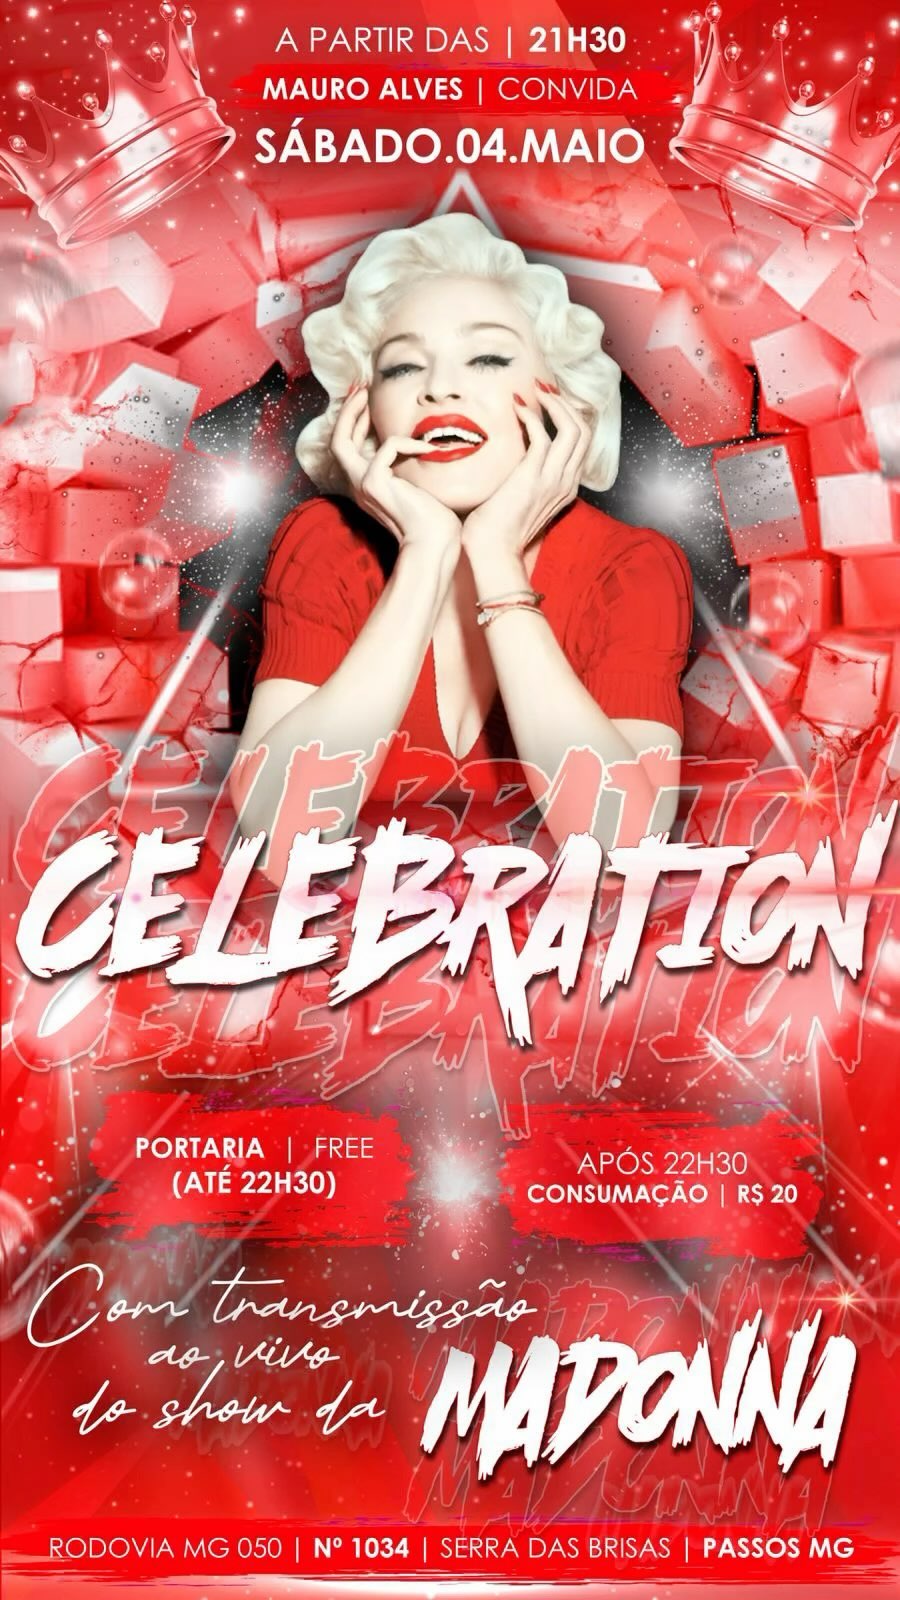 Tribos Bar - Festa Celebration - Transmissão Ao Vivo do Show da Madonna | Passos MG